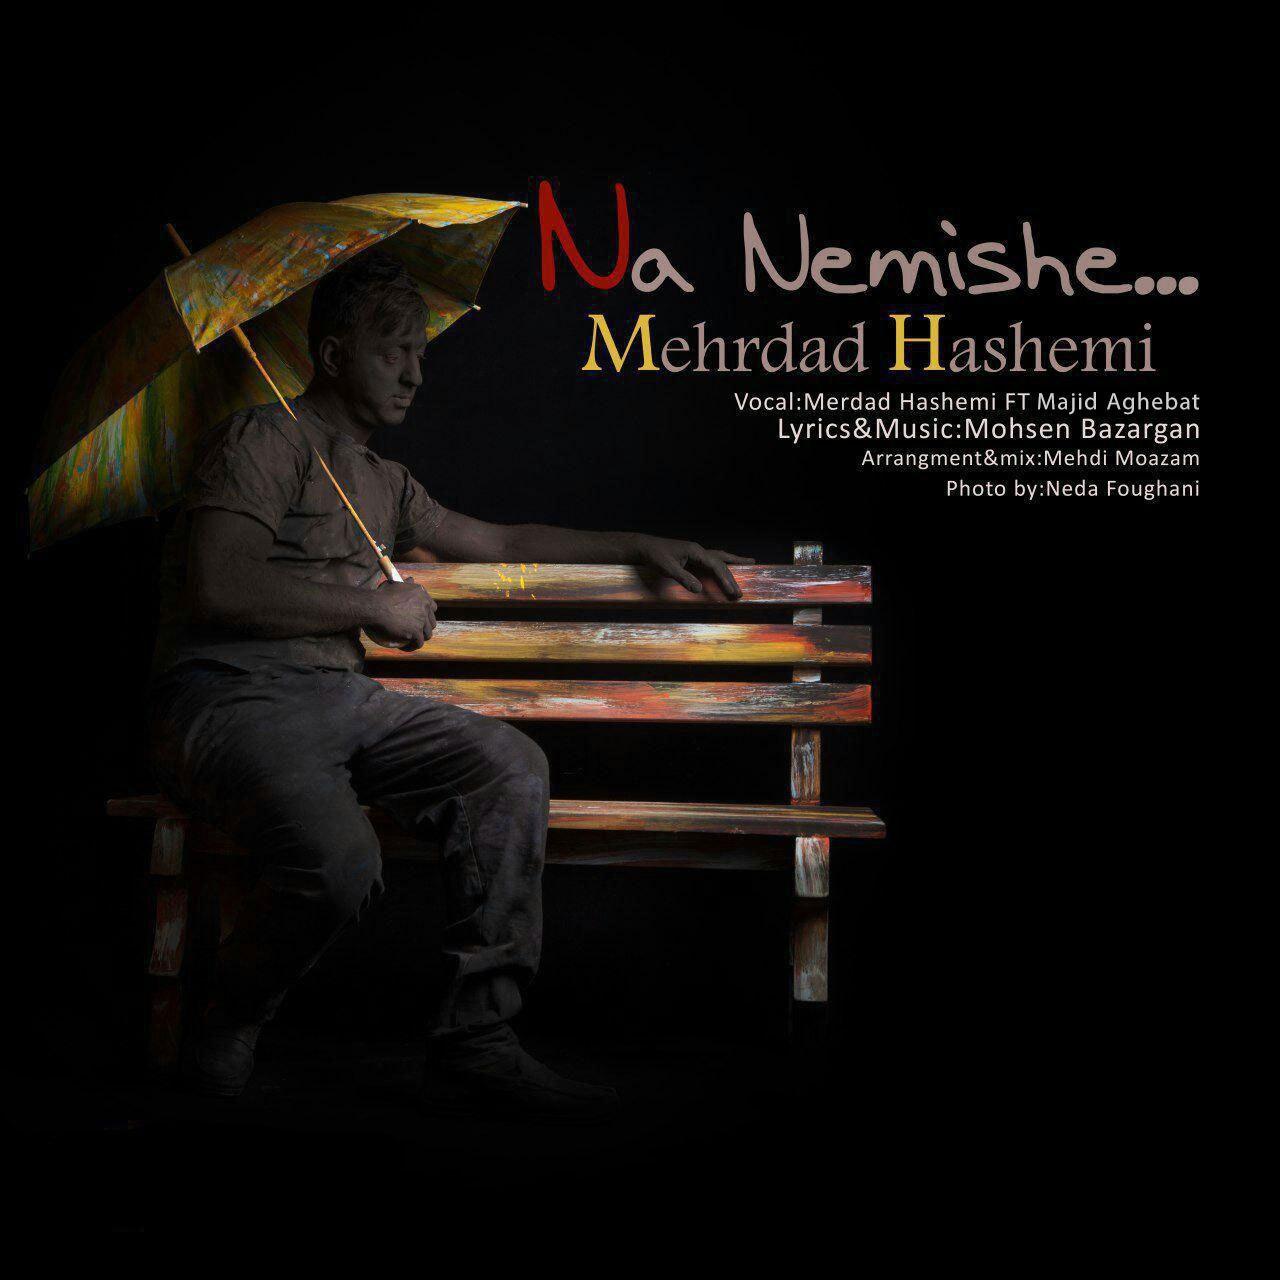  دانلود آهنگ جدید مجید عاقبت و مهرداد هاشمی - نه نمیشه | Download New Music By Majid Aghebat - Na Nemishe (feat. Mehrdad Hashemi)